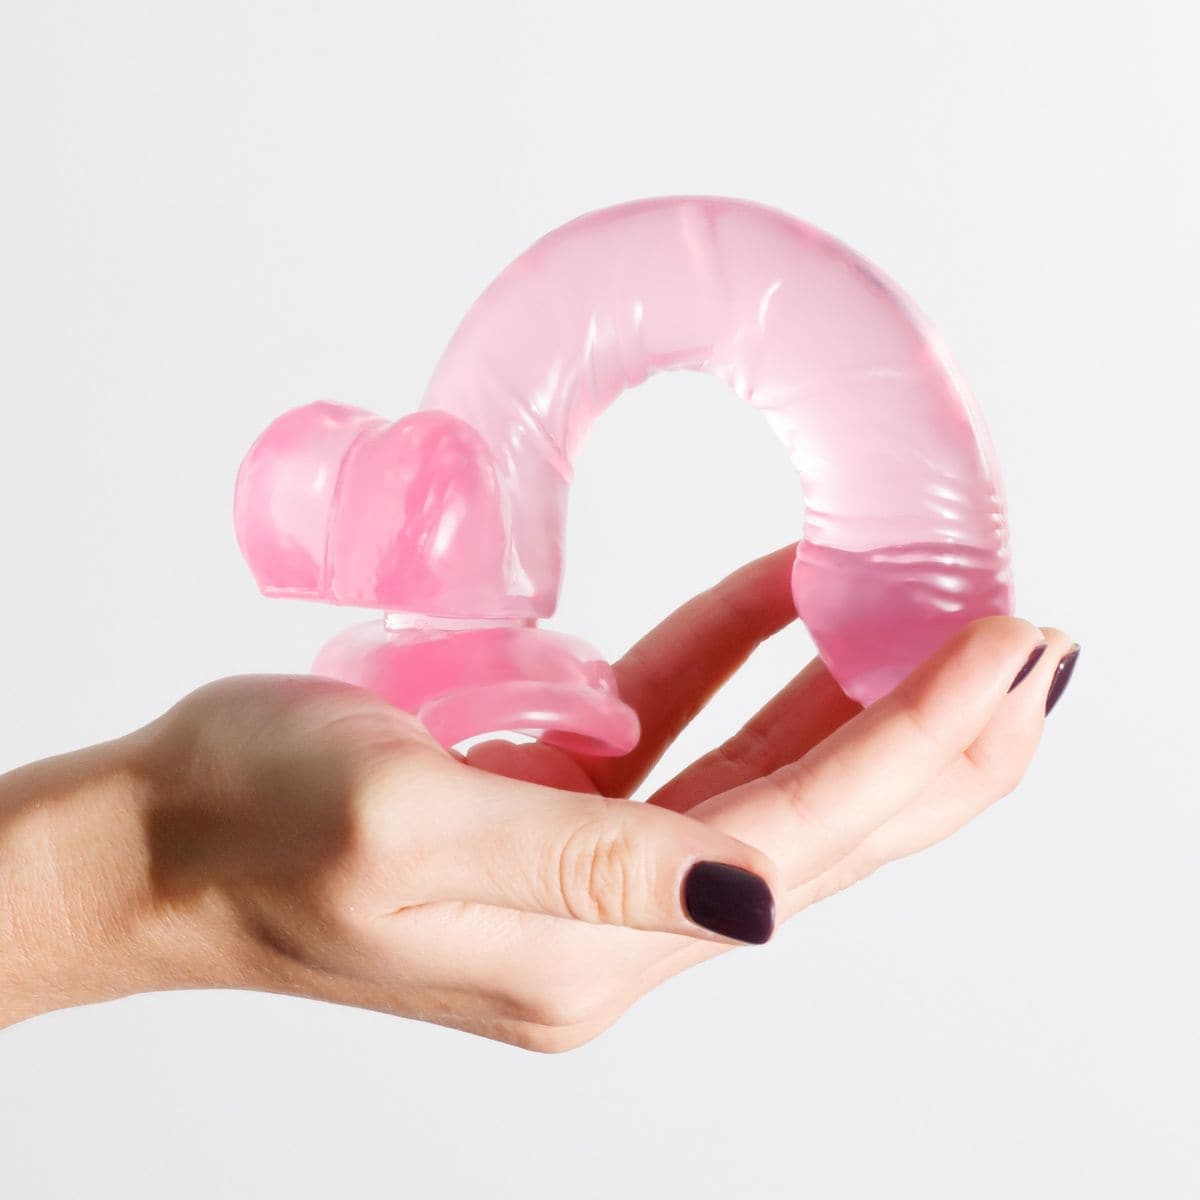 Dildo Hudini Rosa Flexível em Jelly 17,5cm Ø3,5cm - Prazer Realista e Fixação Segura - Pérola SexShop